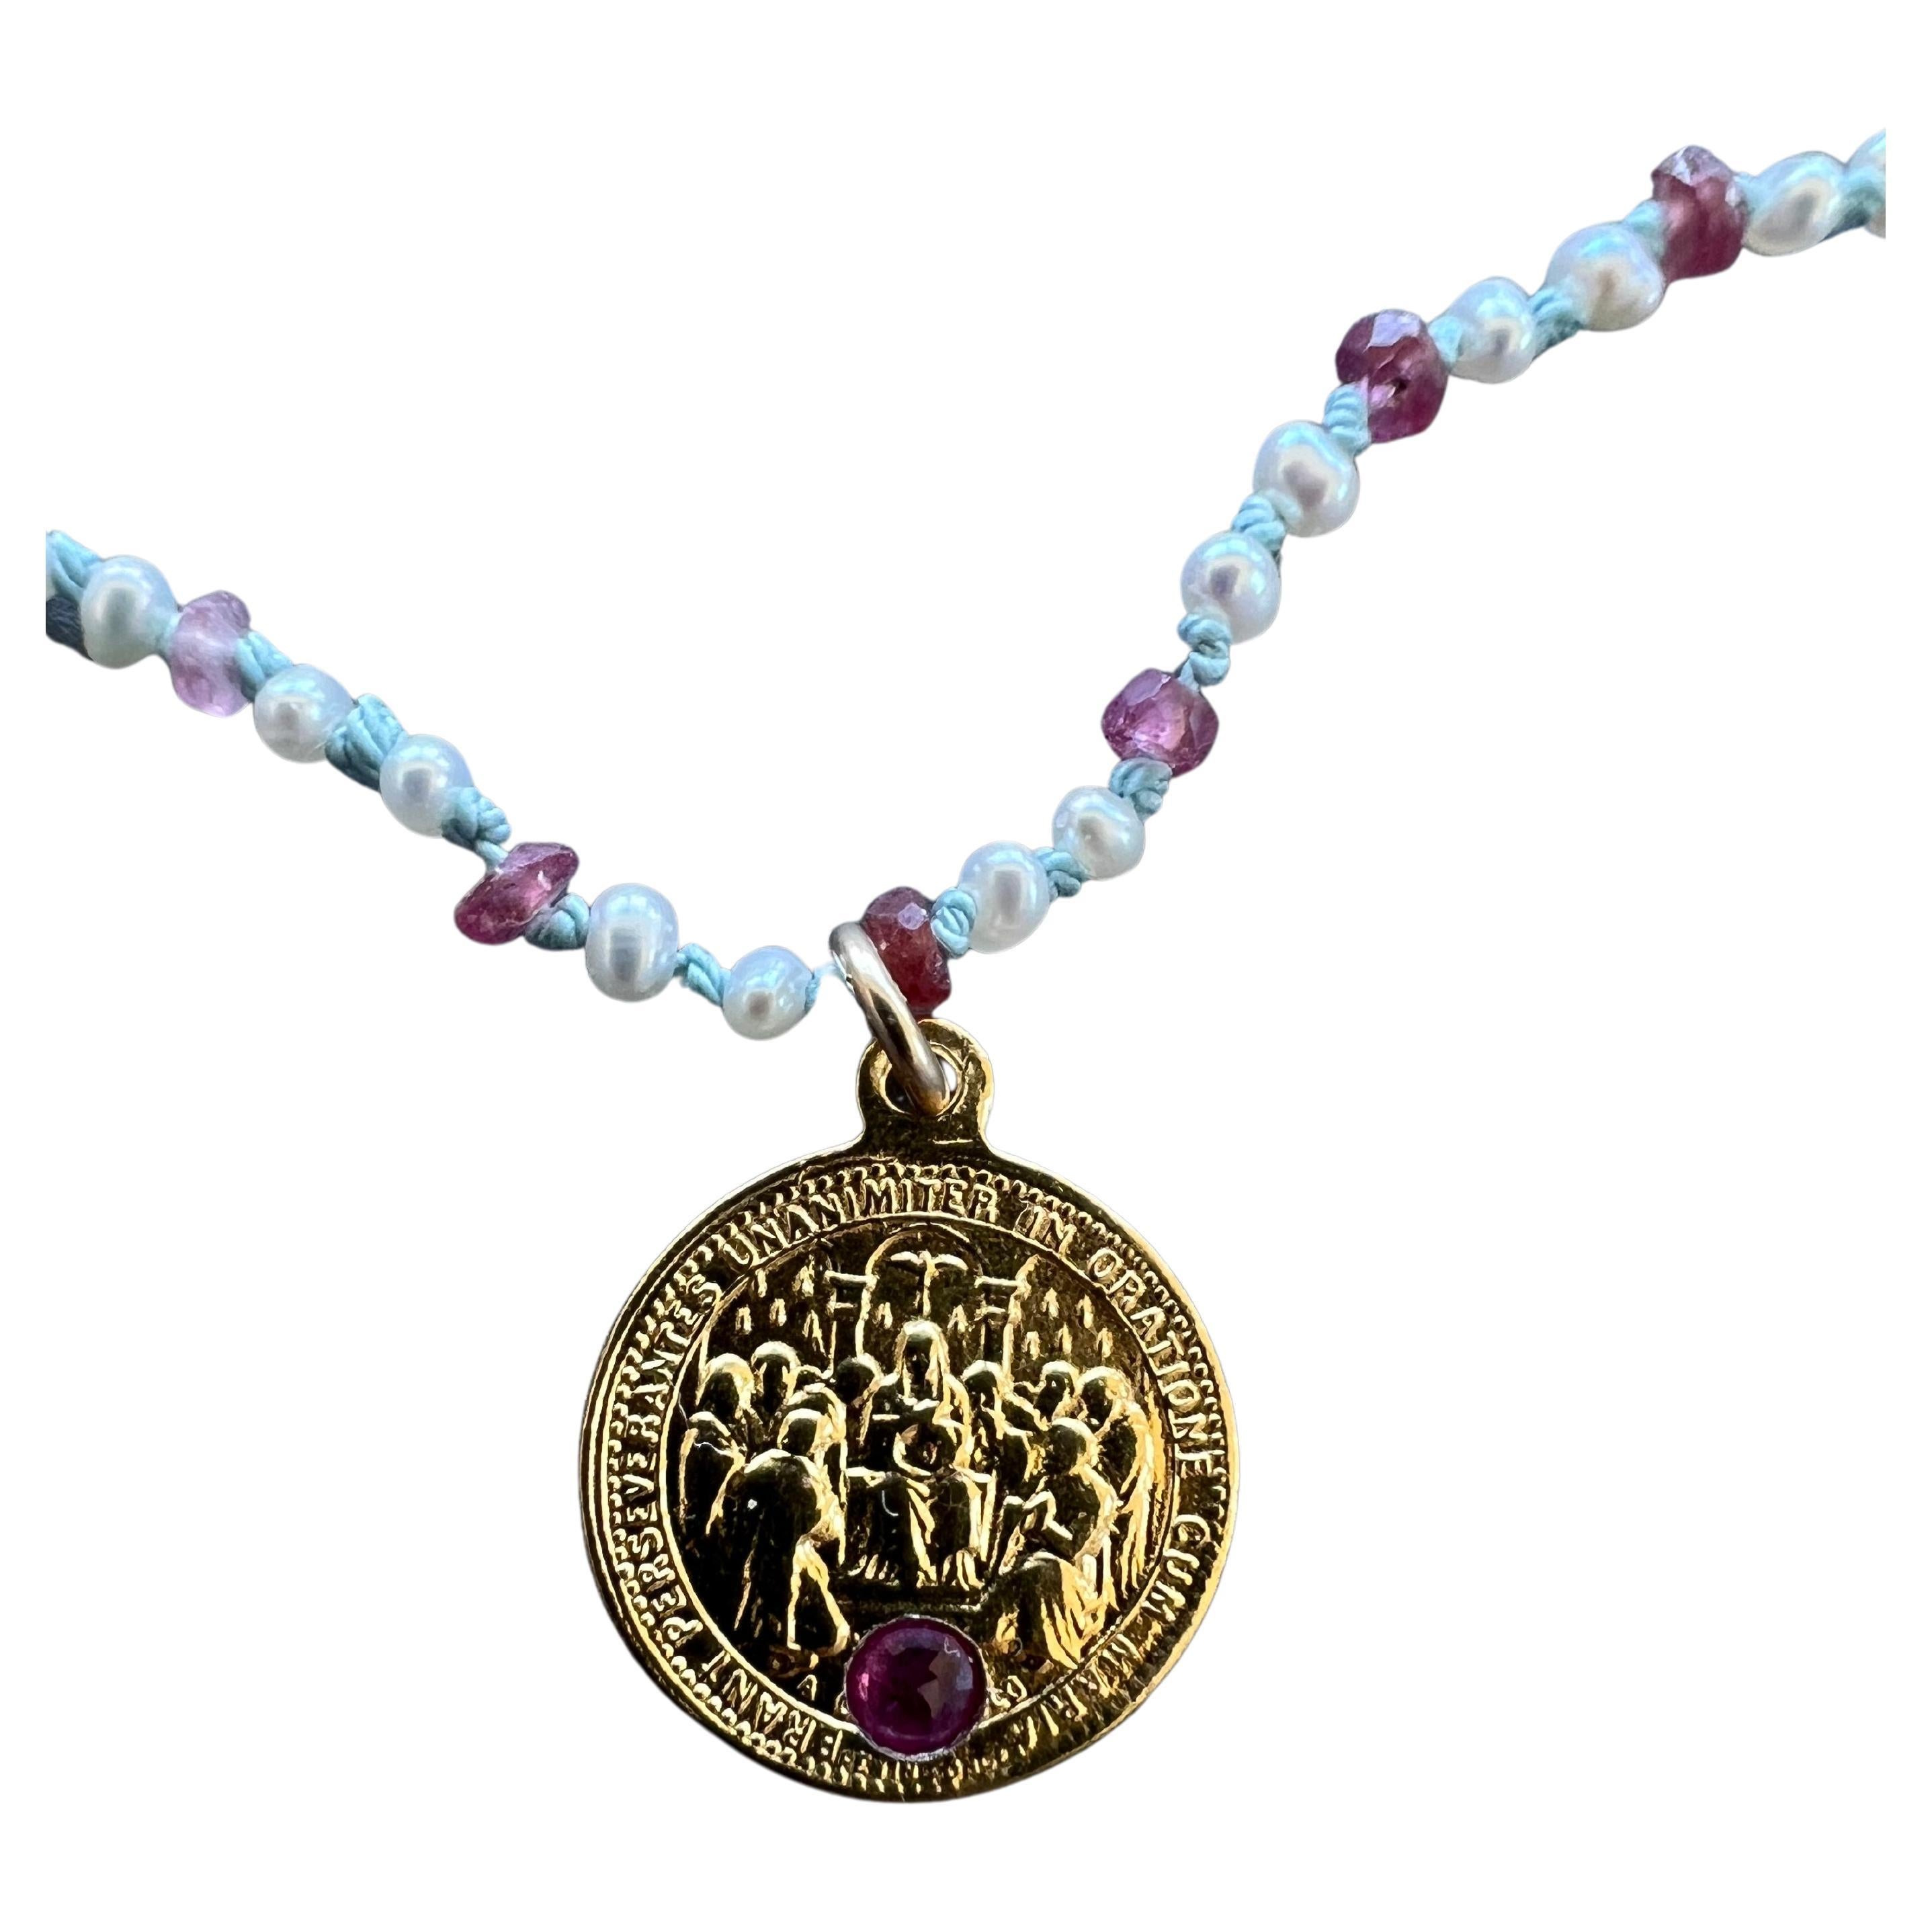 Rosa Turmalin in einer vergoldeten Herz-Jesu-Medaille mit einer Halskette aus weißer Perle, Opal und Rubin mit hellblauen Seidenknoten dazwischen
Kropfband Halskette 16